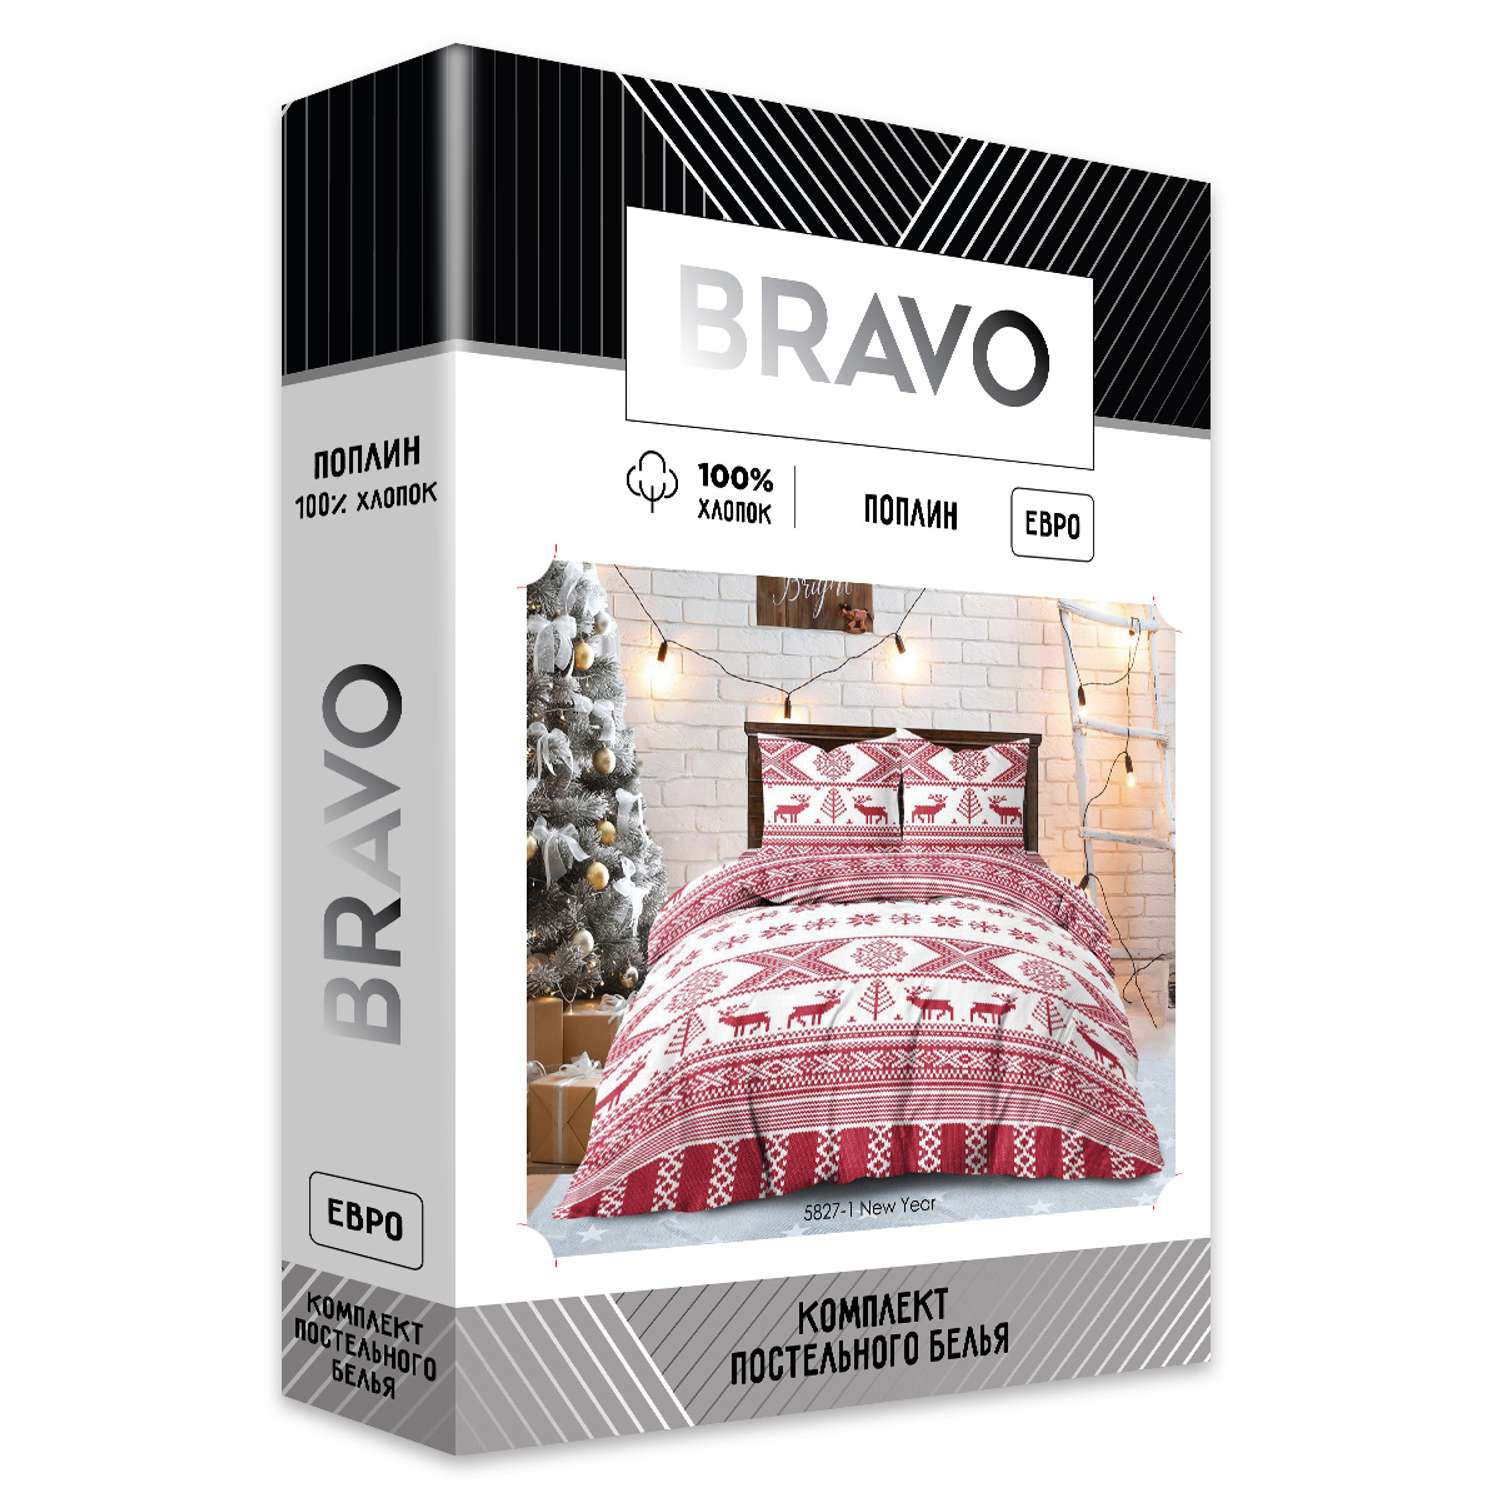 Комплект постельного белья Bravo New Year евро наволочки 70х70 см - фото 7